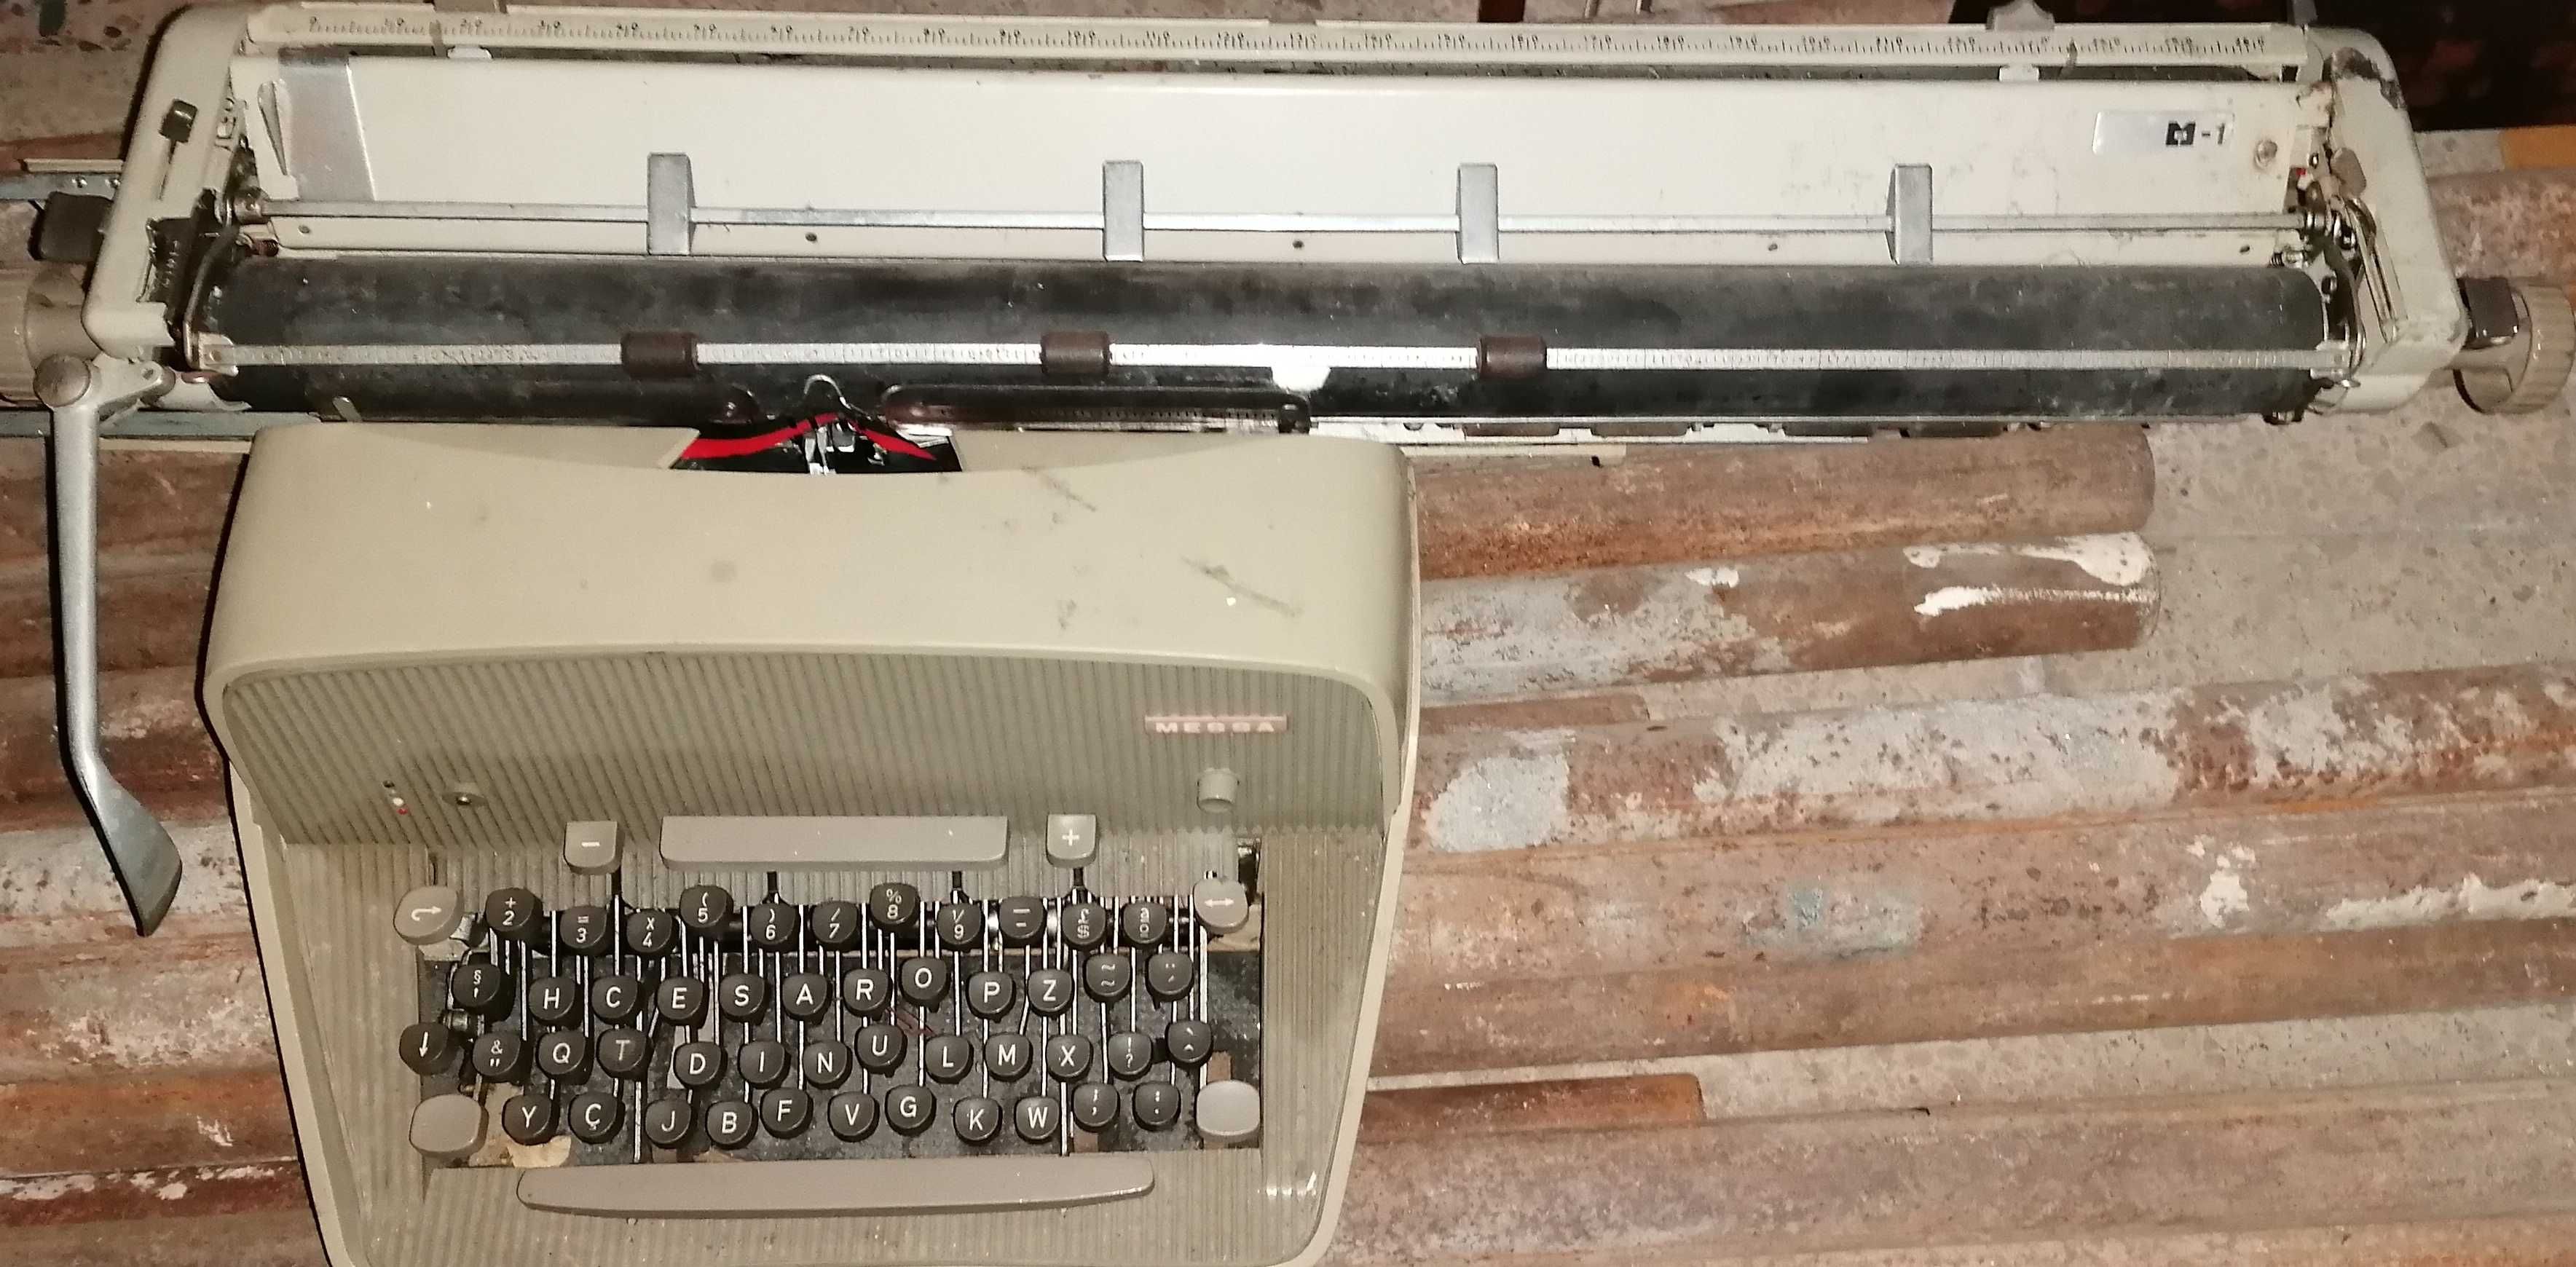 Maquina de escrever "Messa", carreto longo, muito antigo